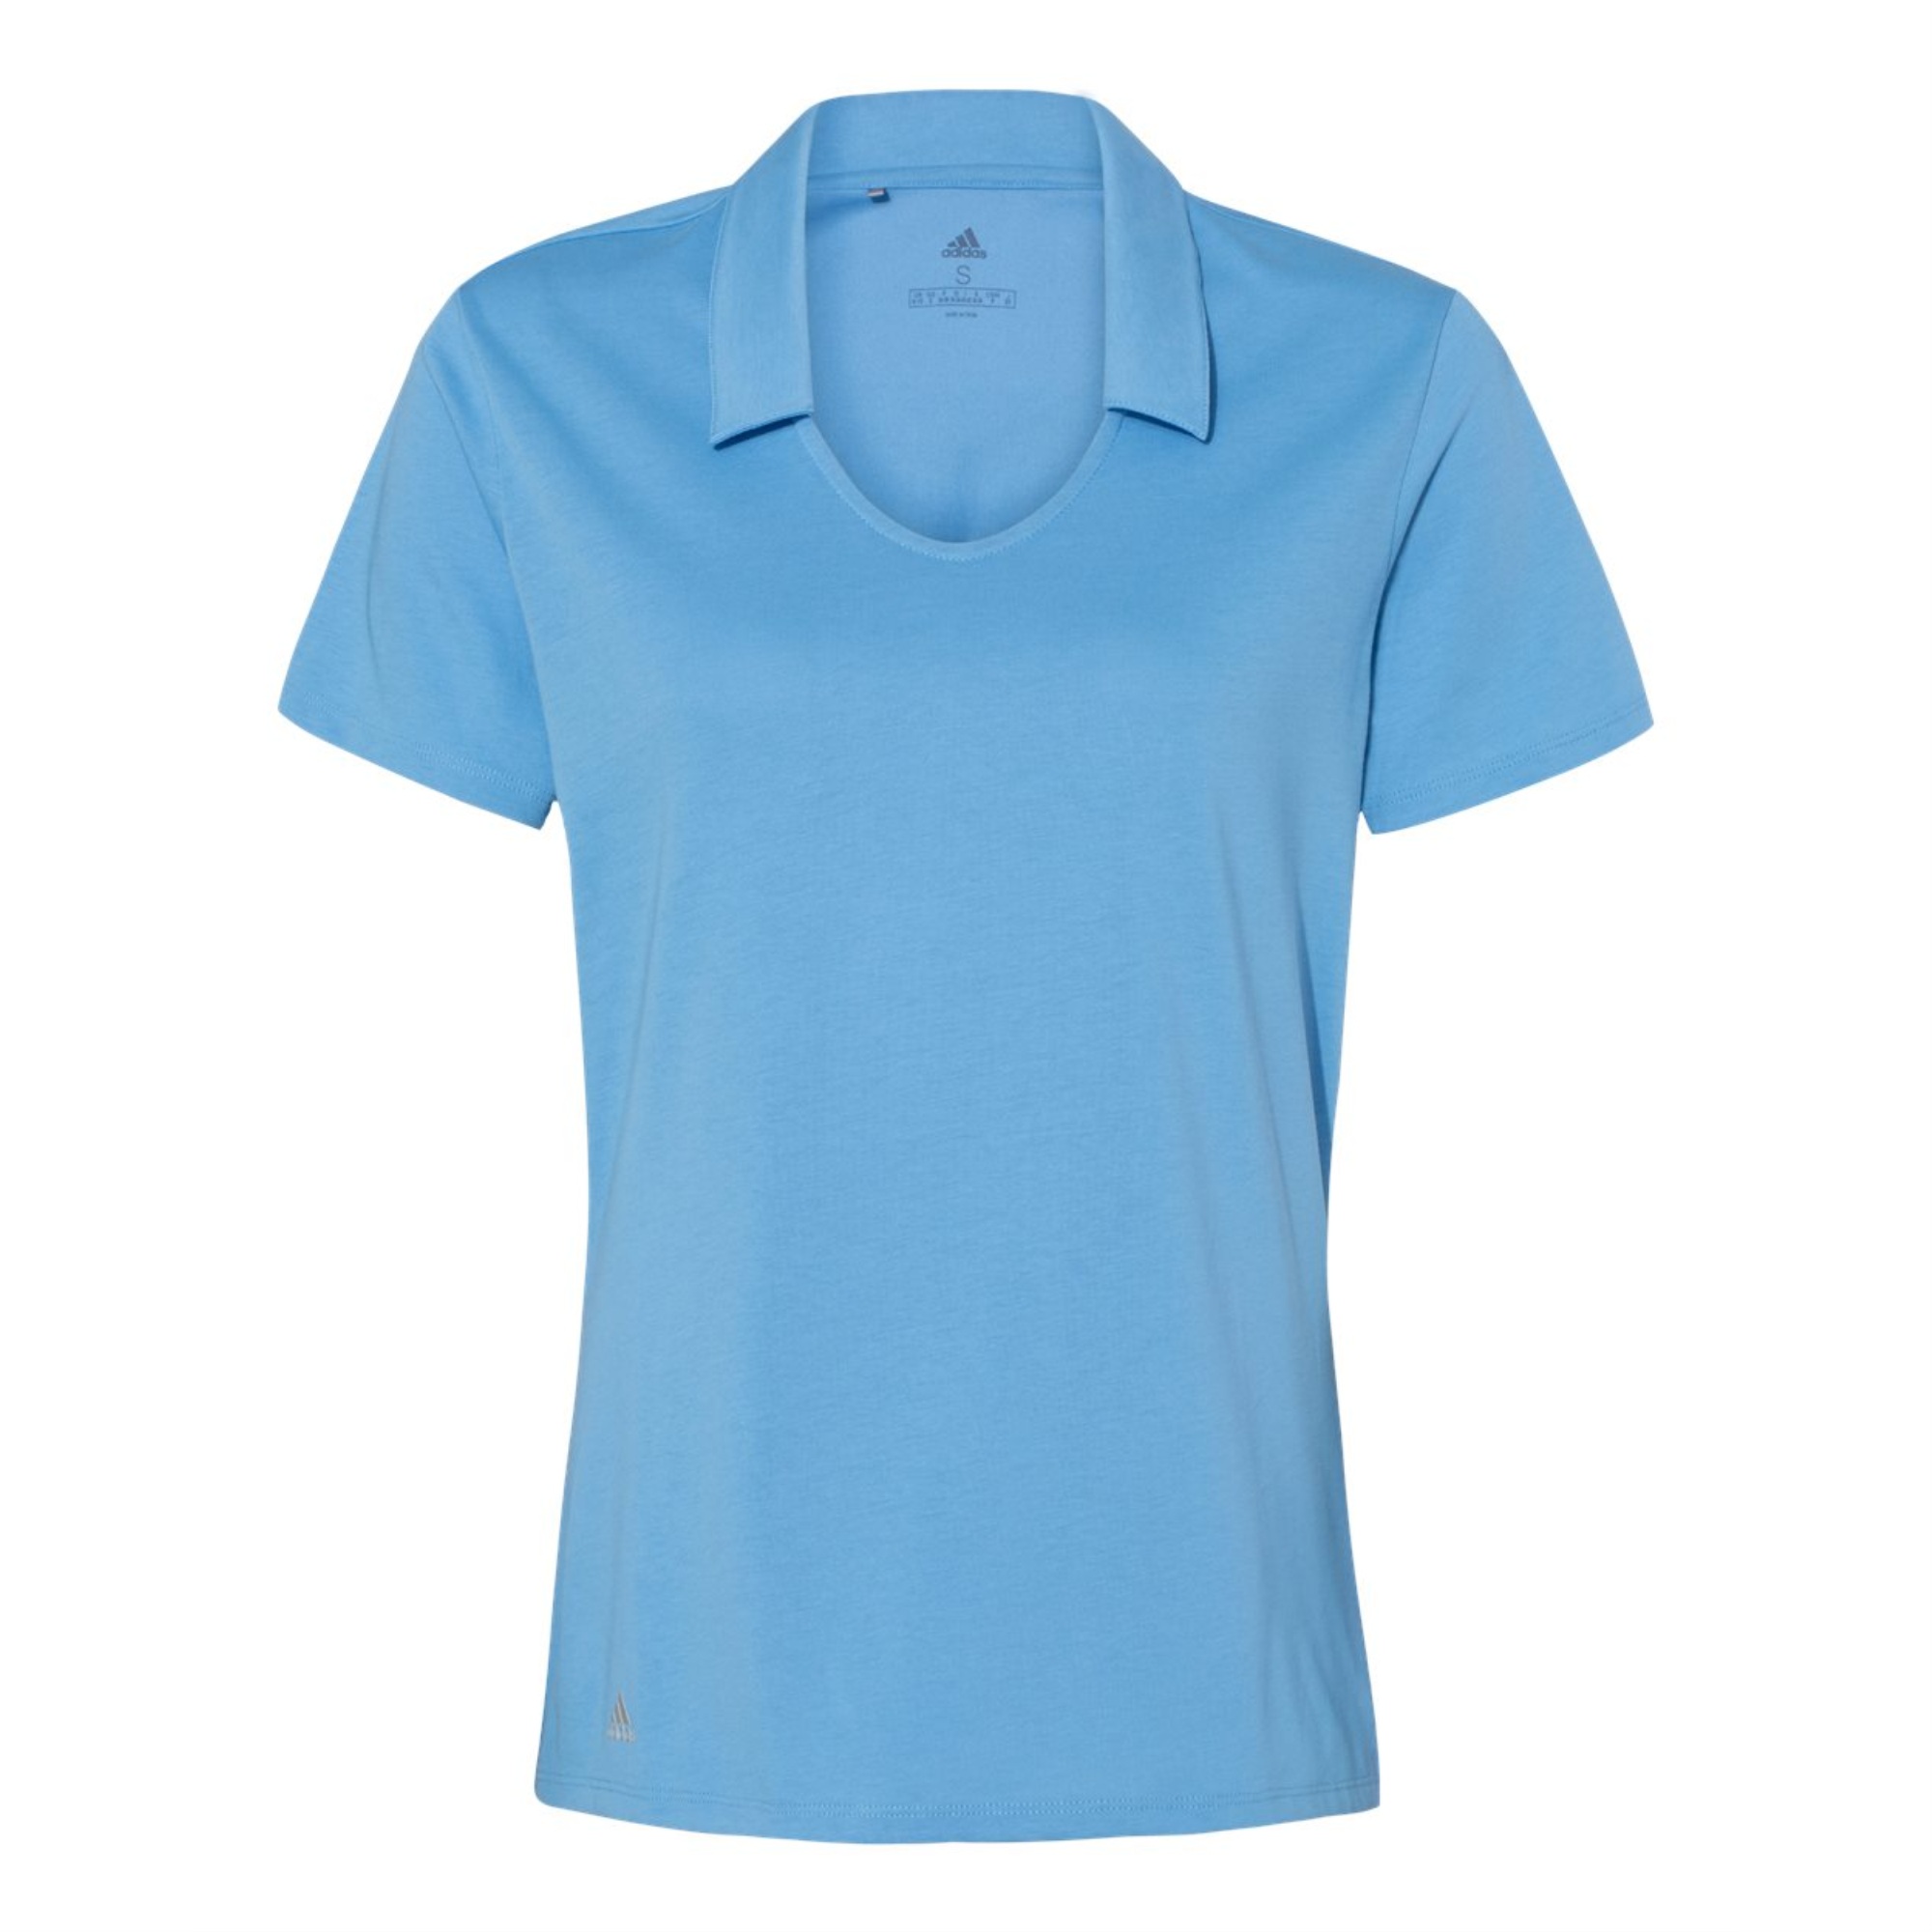 Adidas Women's Cotton Blend Sport Shirt - 2XL / Light Blue